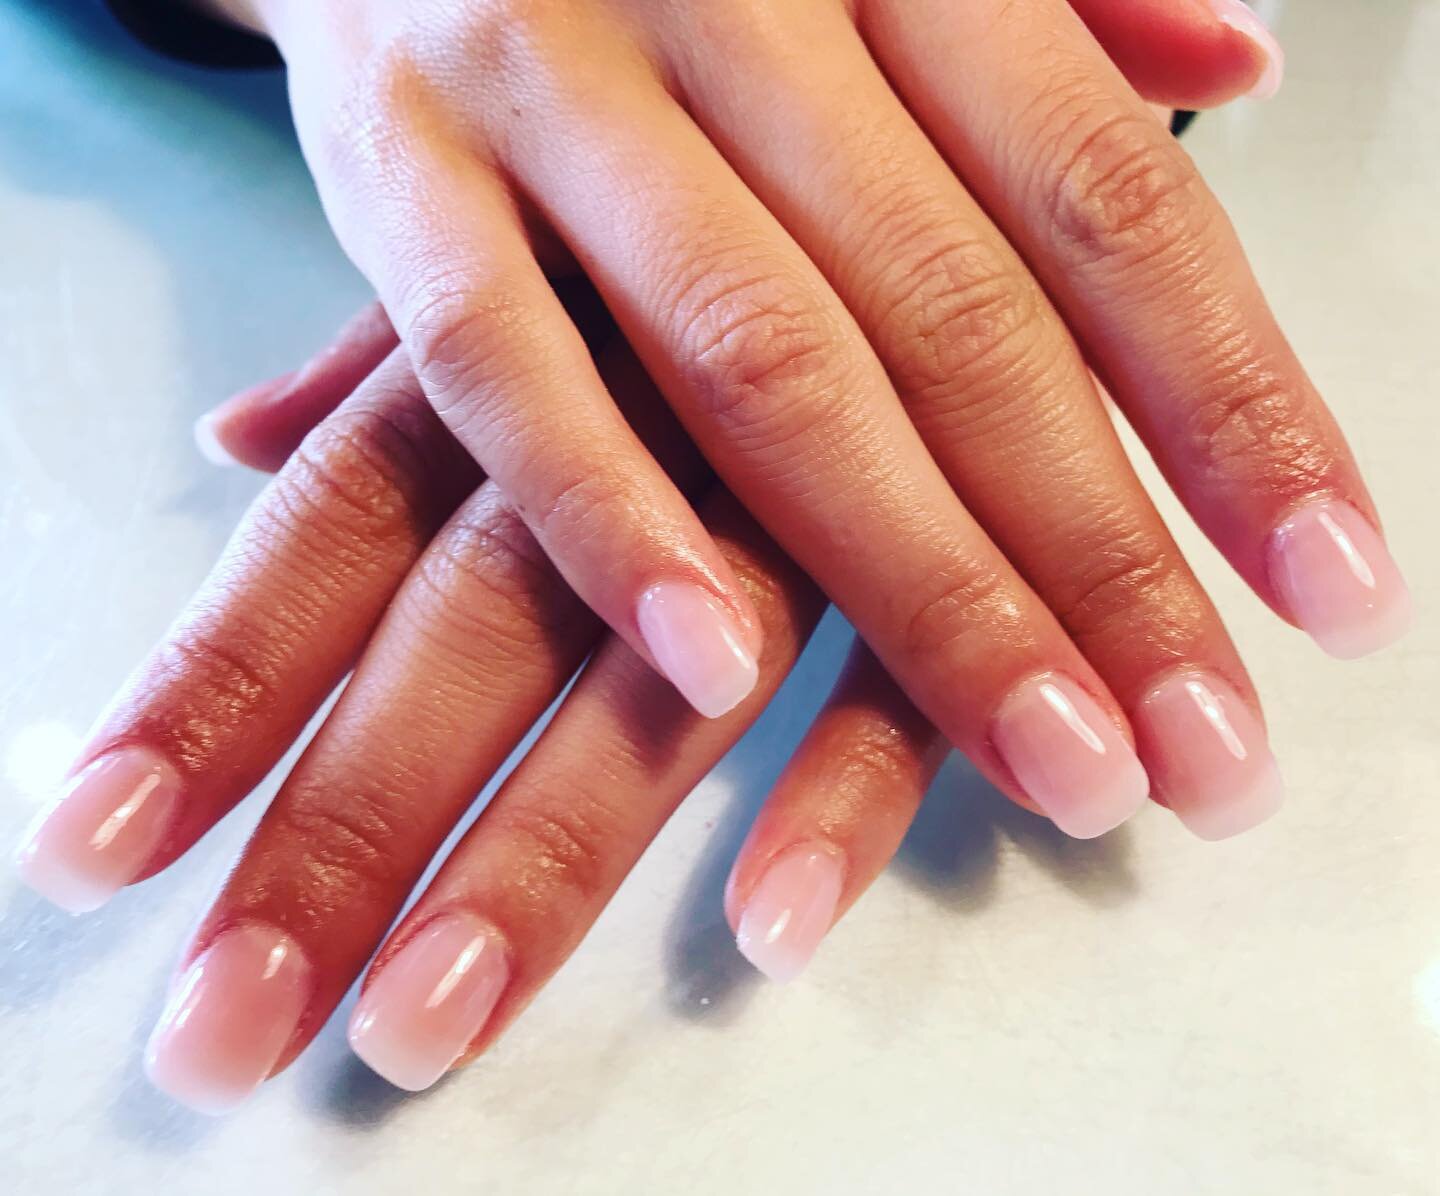 Perfect natural nails 
.
.
.
#nails #nailart #nailsofinstagram #manicure #naturecolournails #beauty #gelnails #nailstagram #nailsoftheday #instanails #nailstyle #inspire #naildesign #nailswag #nailsart #acrylicnails #naildesigns #nailpolish #love #na